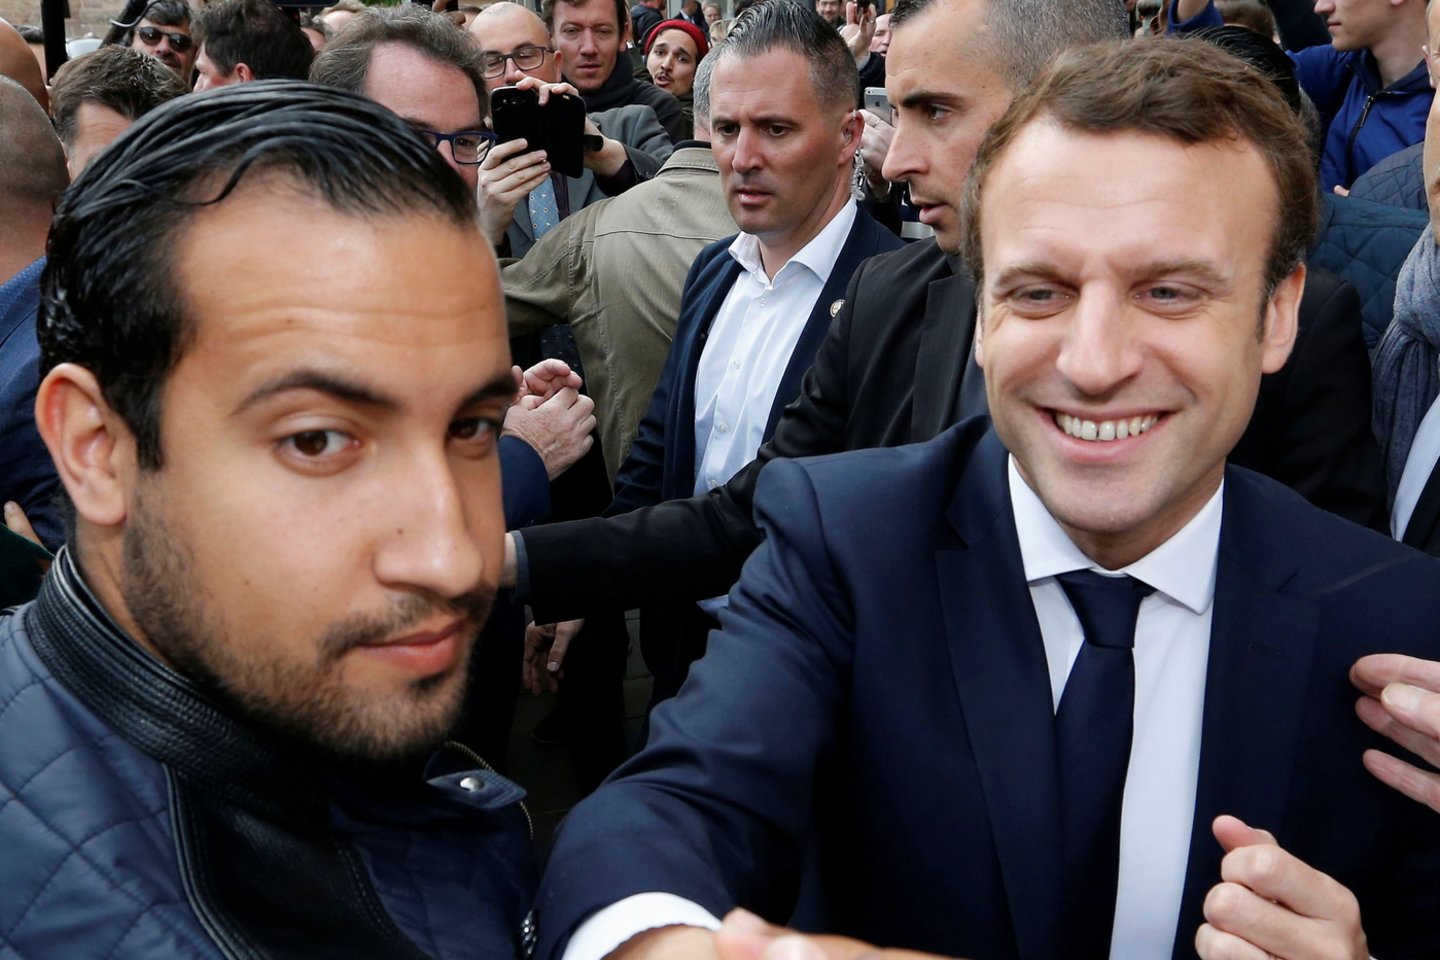 Buvęs vienas iš Prancūzijos prezidento Emmanuelio Macrono apsaugos vadovų ir vienas valdančiosios partijos aparato darbuotojas sekmadienį buvo apkaltinti dėl Gegužės 1-osios demonstracijos dalyvių užpuolimų, kurių įrašai išplito socialiniuose tinkluose. <br>Reuters/Scanpix nuotr.